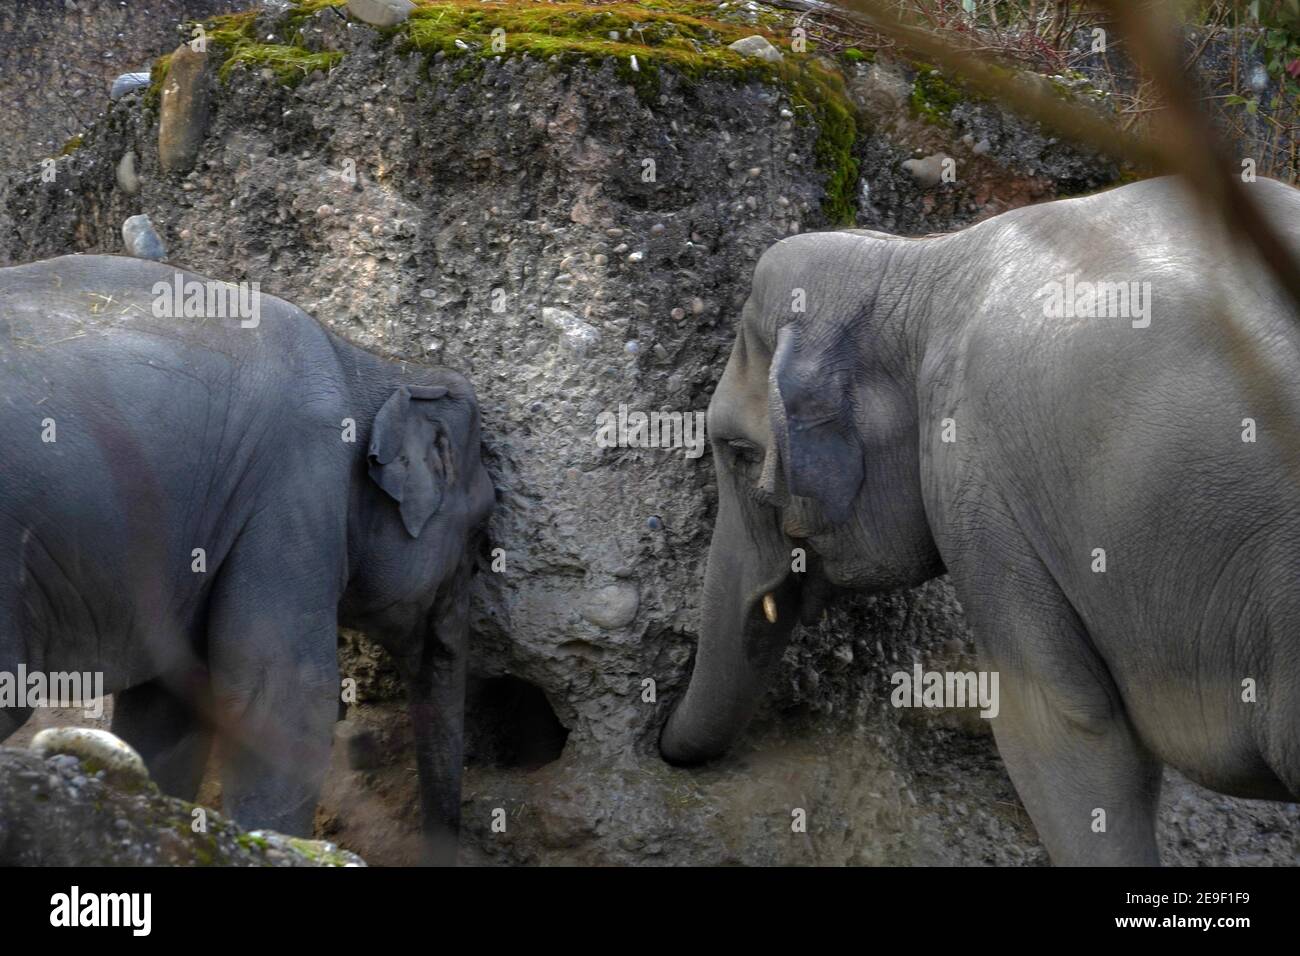 Zwei indische Elefanten, in Latein Elephas maximus indicus genannt, leben in Gefangenschaft erkunden und spielen mit einer interaktiven Betonwand. Stockfoto